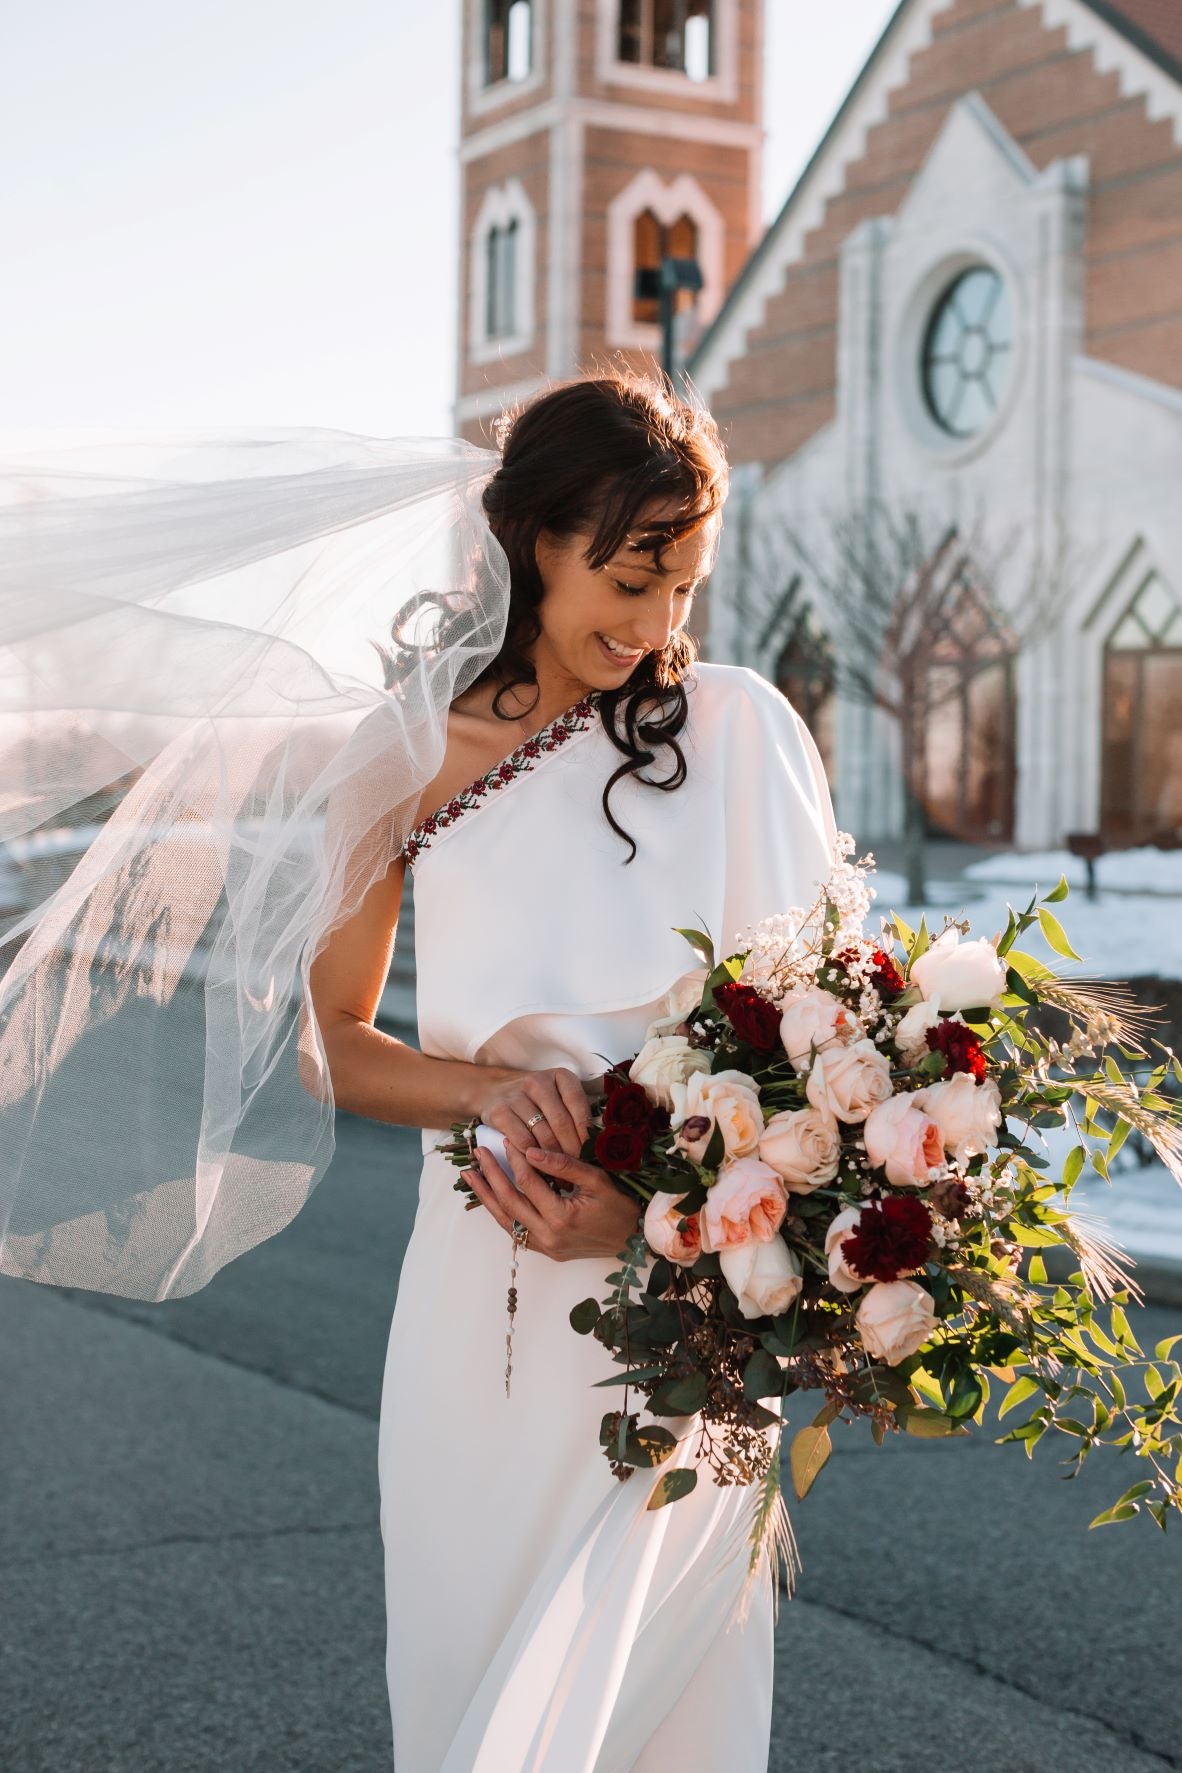 Ukrainian Wedding Gown – A N A G R A S S I A